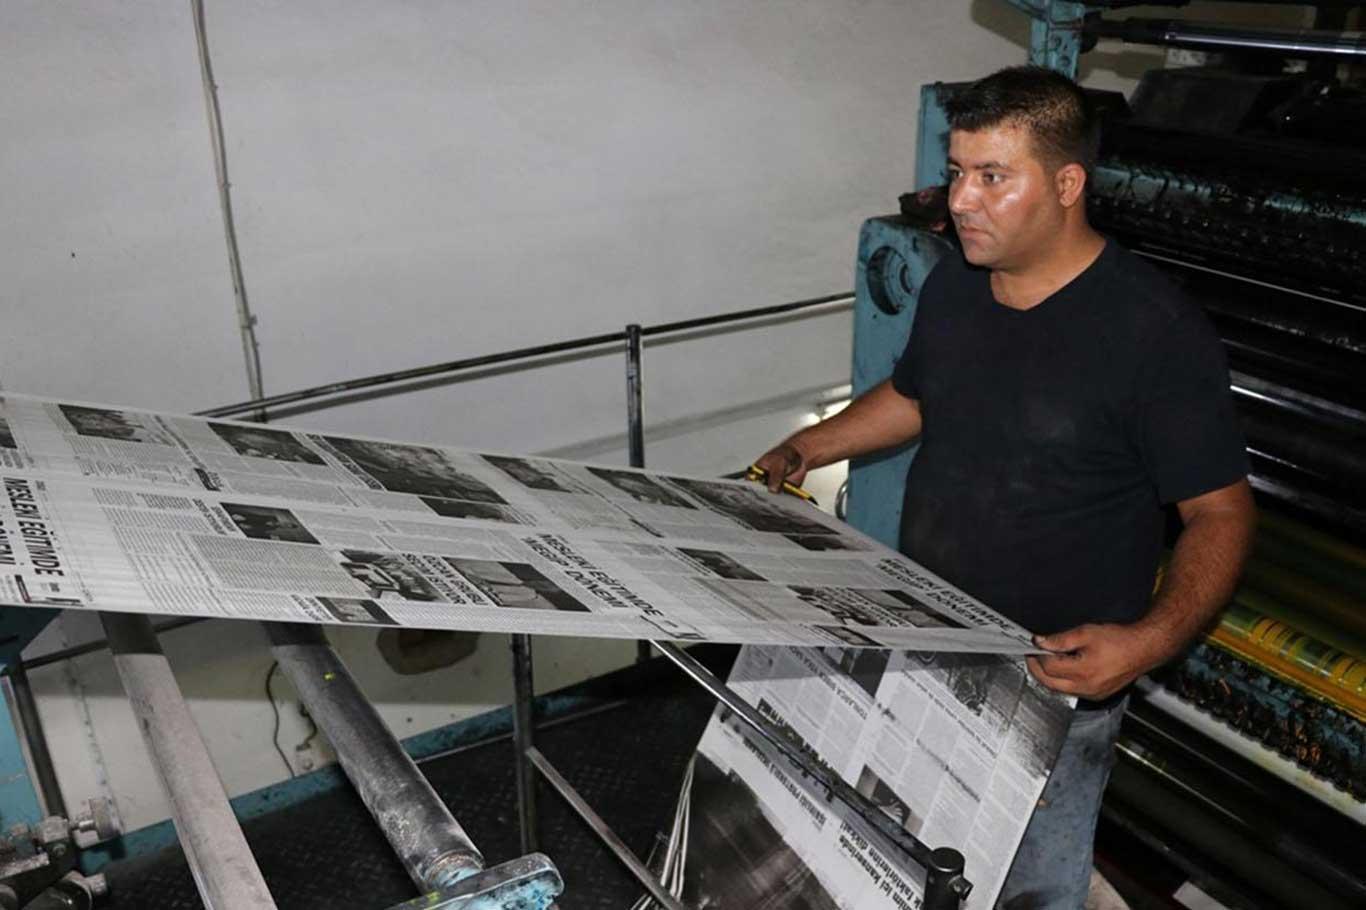 Gaziantep'te Coronavirusten dolayı günde 2 gazete basılacak